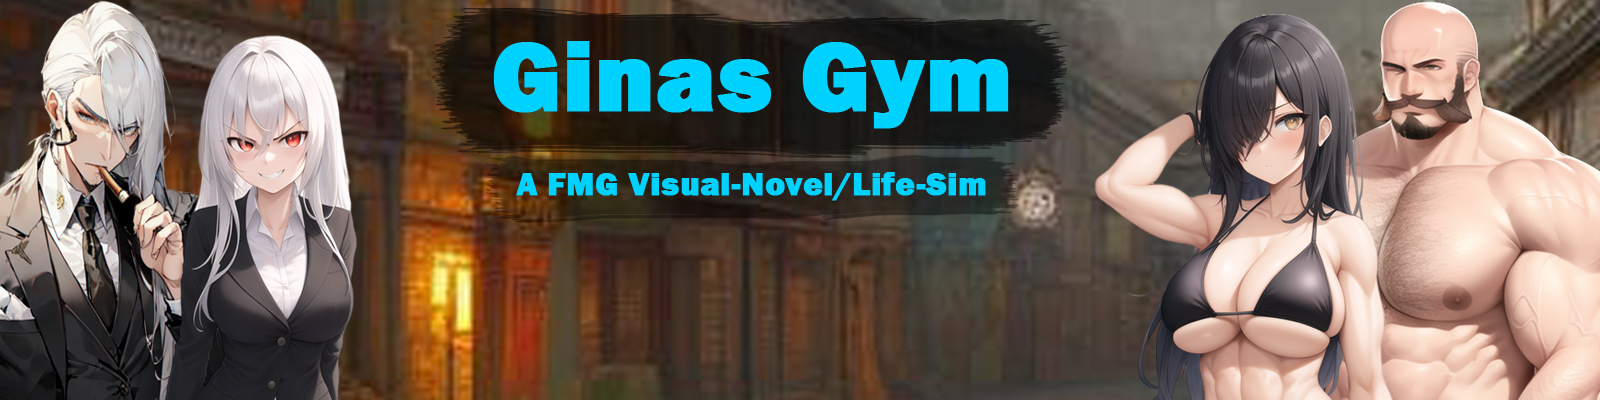 [日系SLG汉化2D]吉纳斯健身房 Ginas Gym 0.1.2 Public[双端722M/FM/BD]  游戏资源